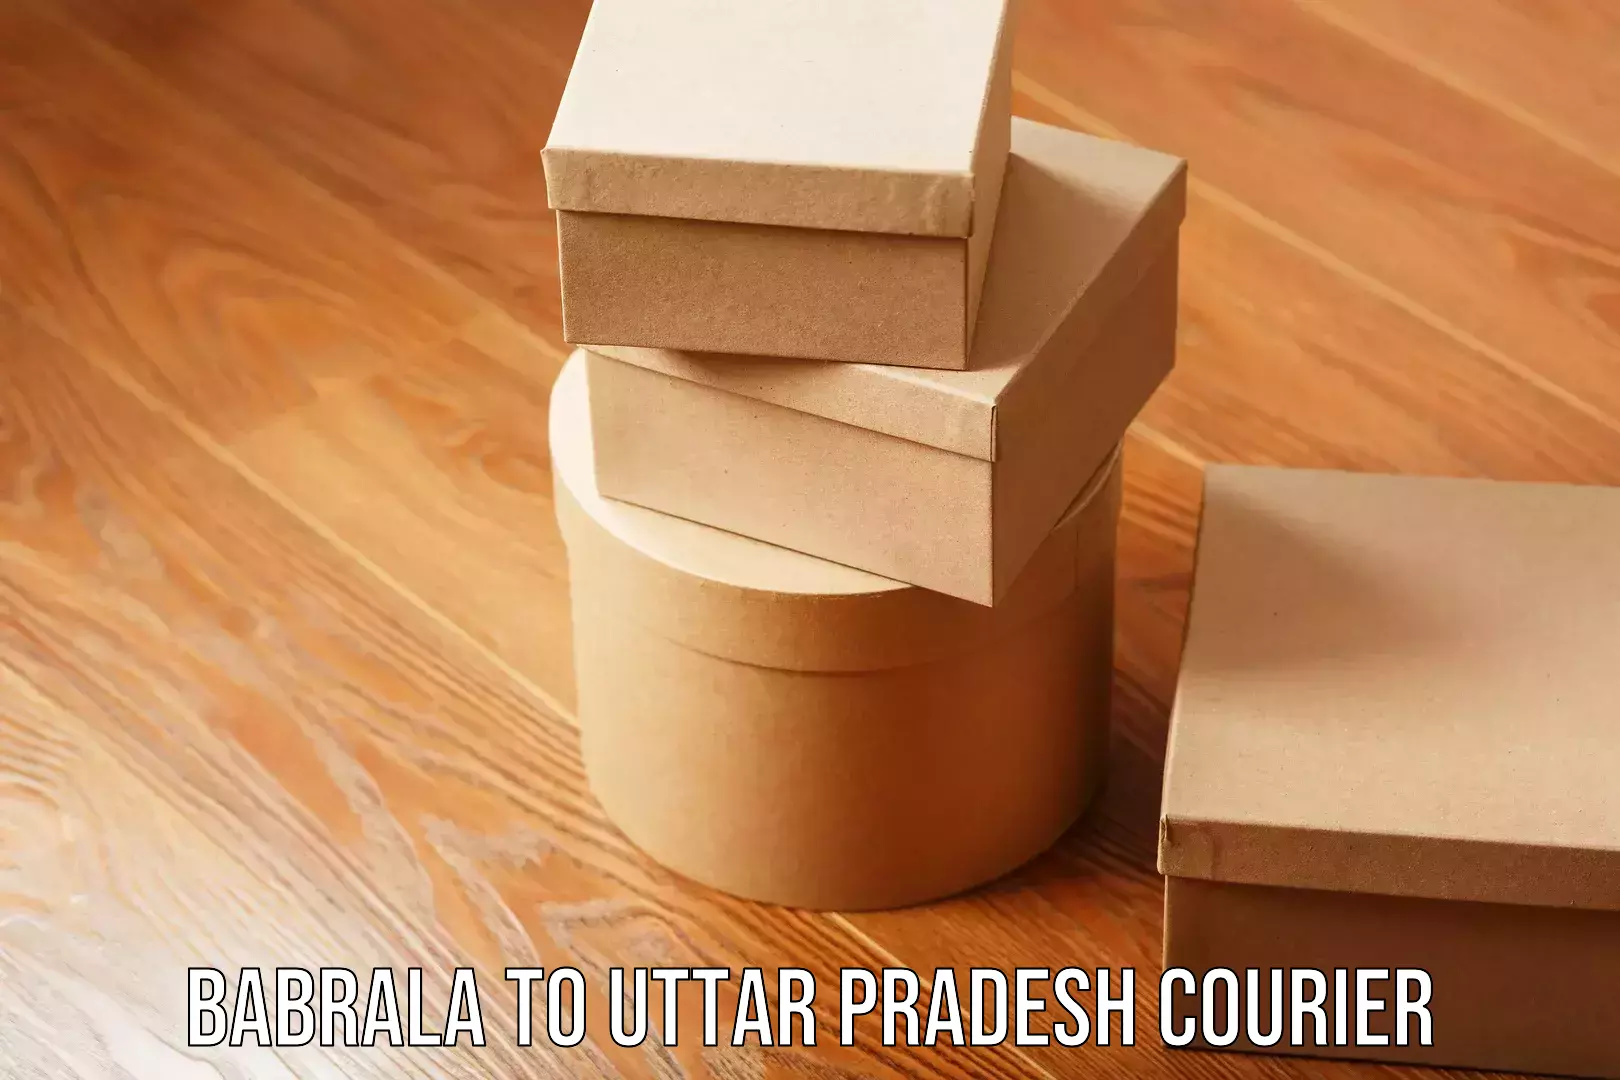 Efficient cargo handling Babrala to Uttar Pradesh